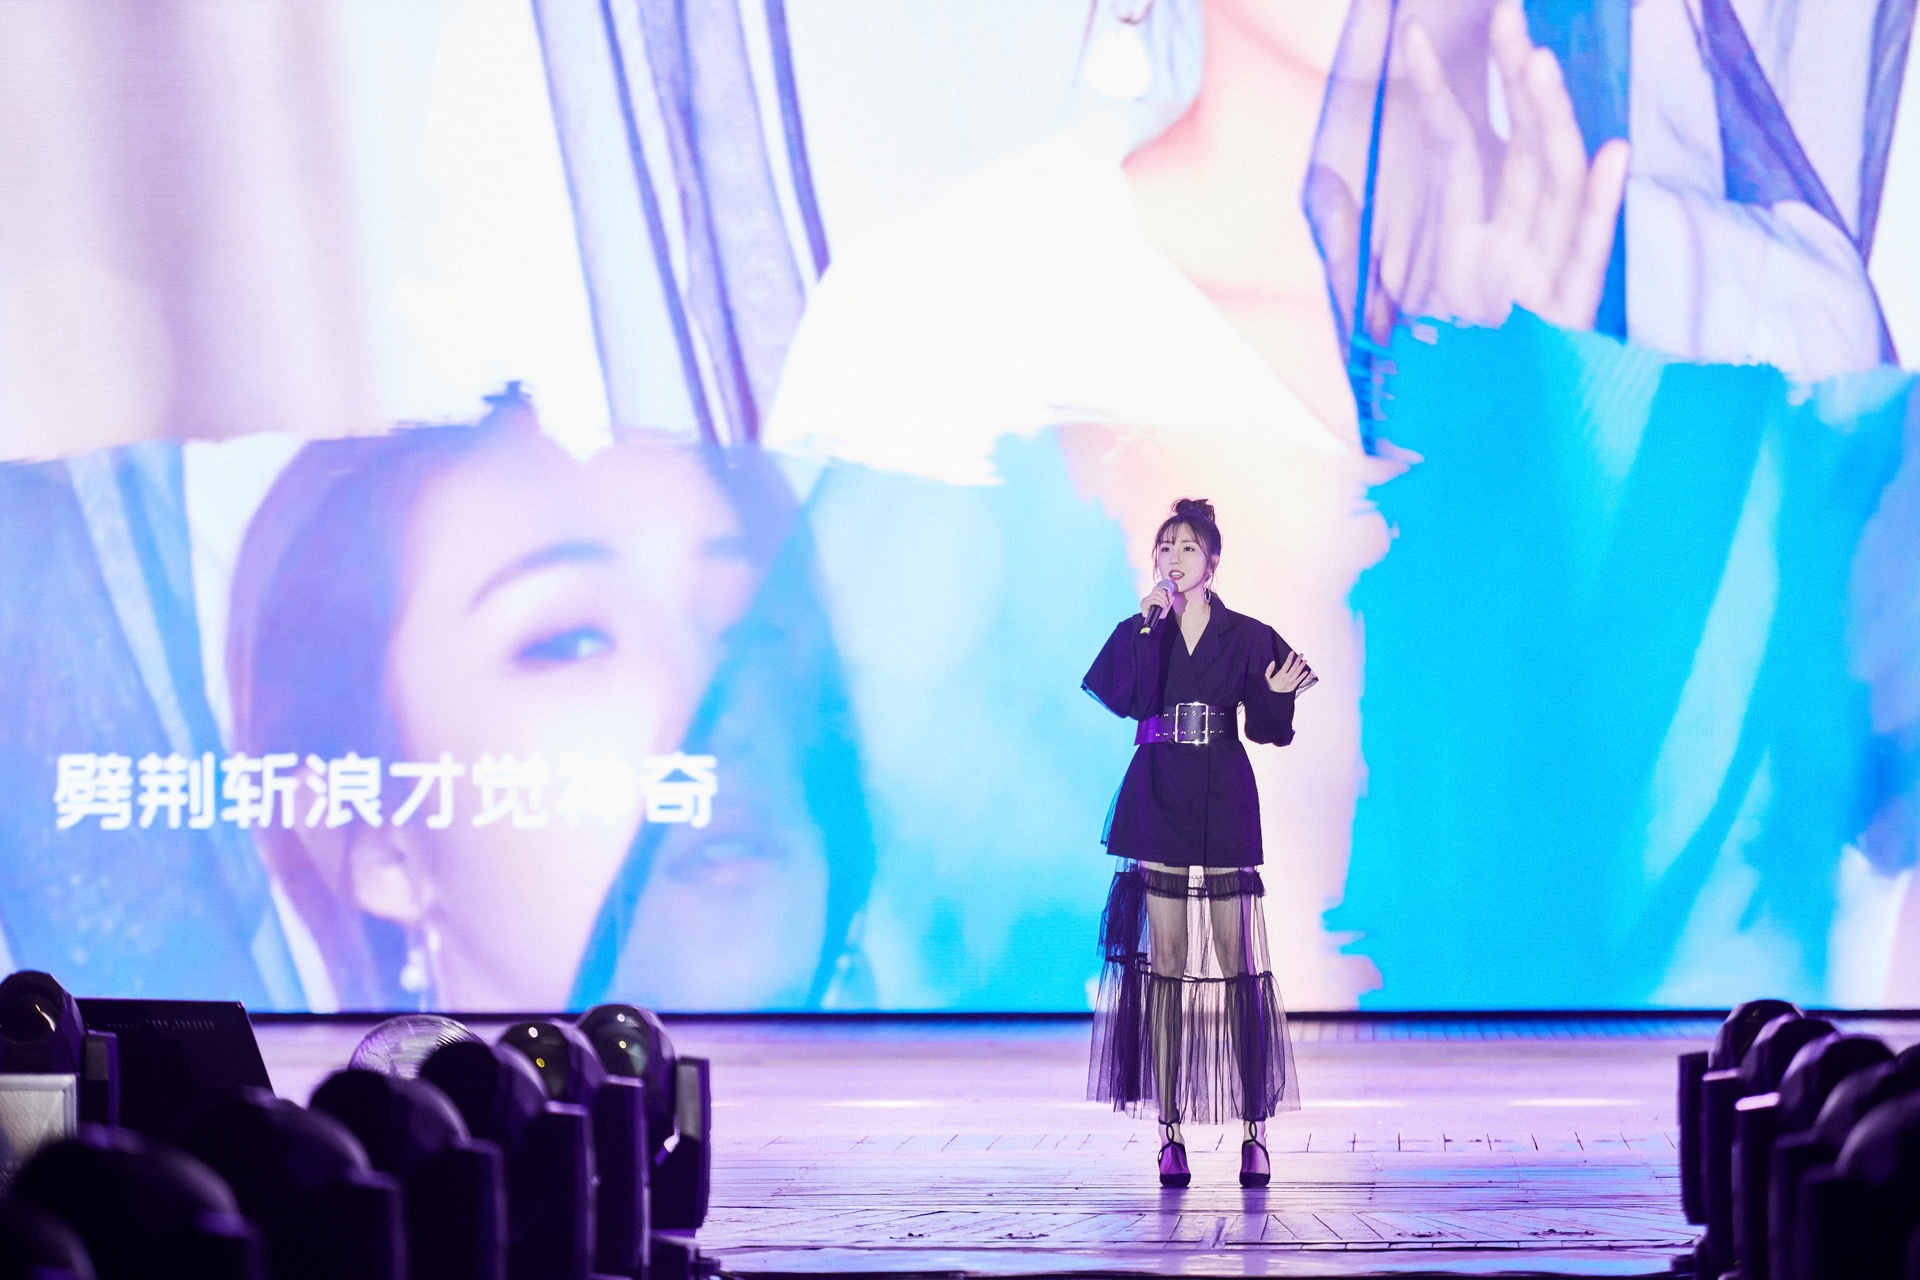 张可盈出席亚洲音乐盛典 获年度荣誉新人歌手奖